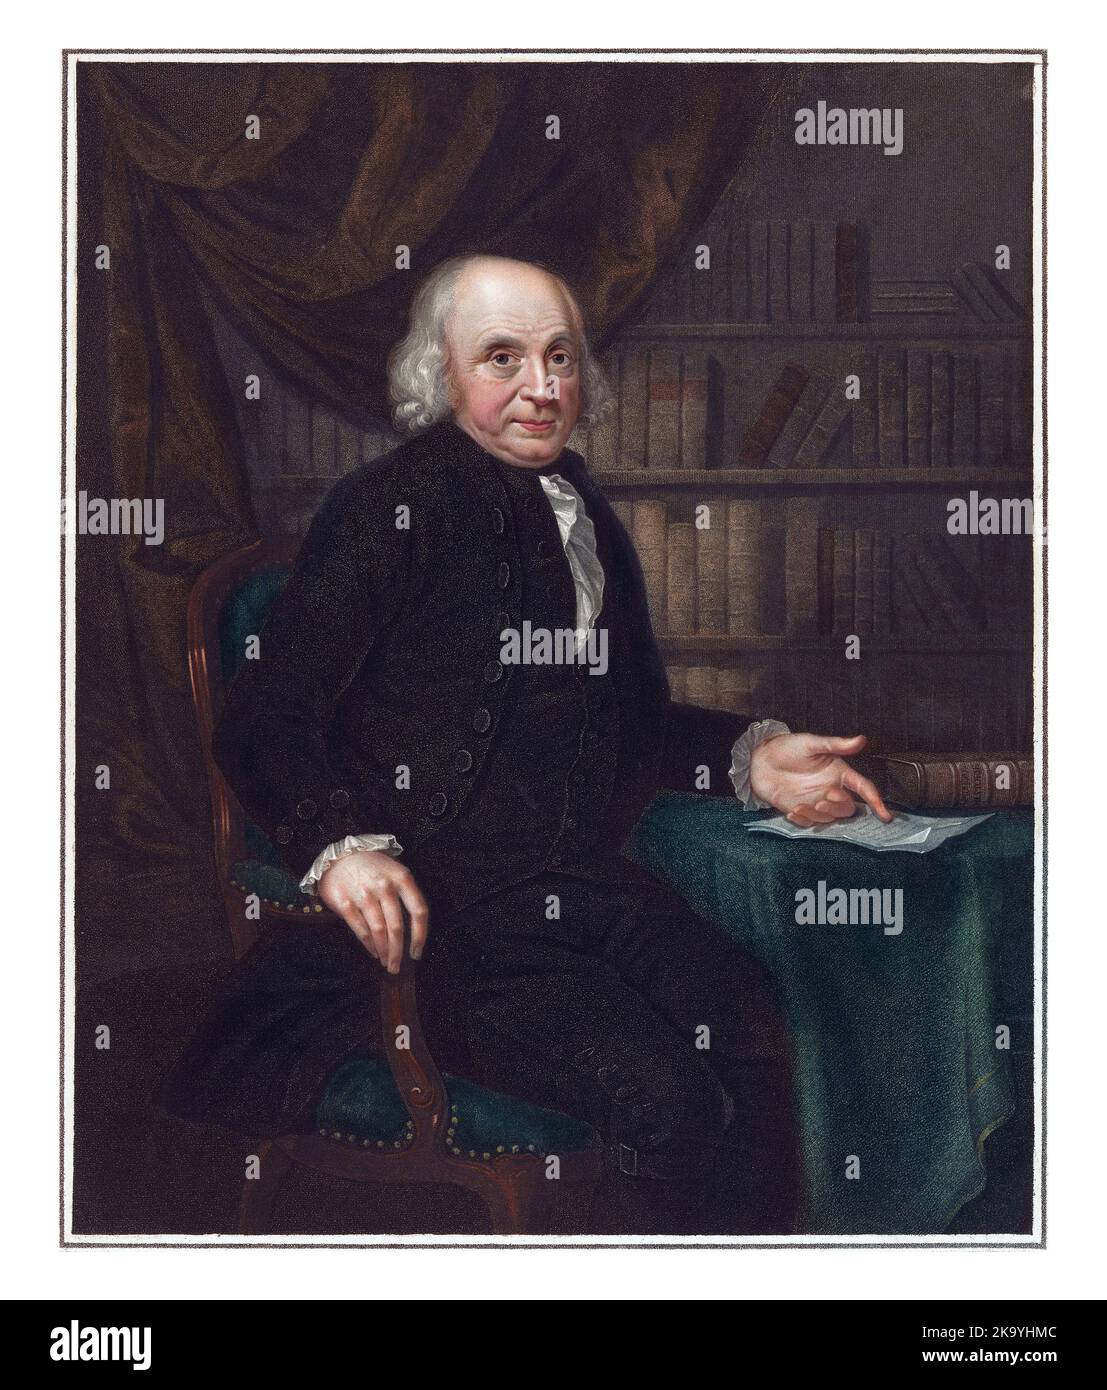 Portrait of Adolph Werner van Pallandt tot Zuthem, Drost van IJsselmuiden, Luigi Schiavonetti, after Adriaan de Lelie, 1790 - 1810, vintage engraved. Stock Photo